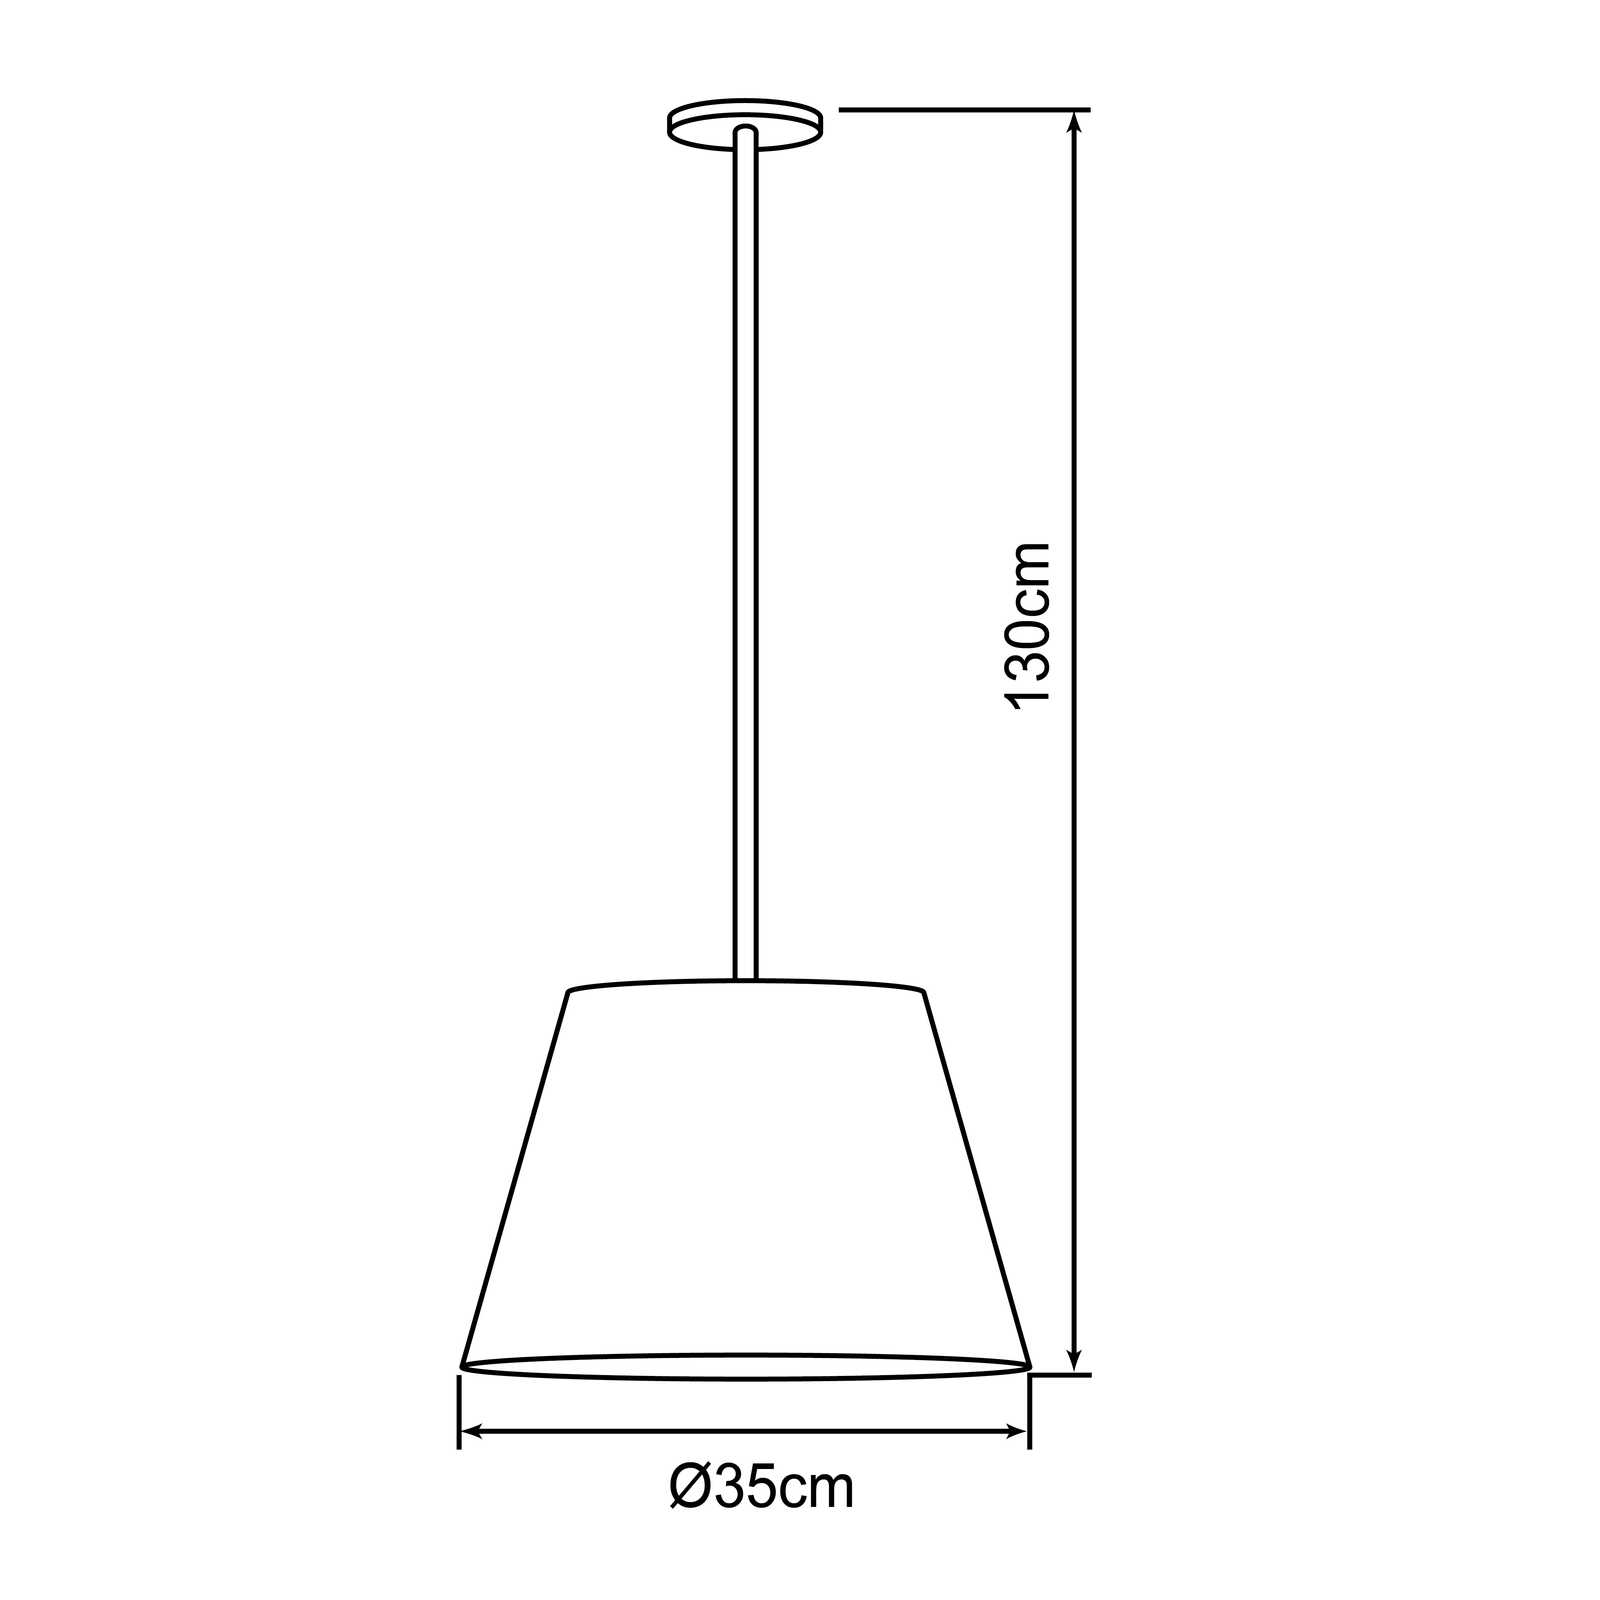             Textiel hanglamp - Milaan 2 - Bruin
        